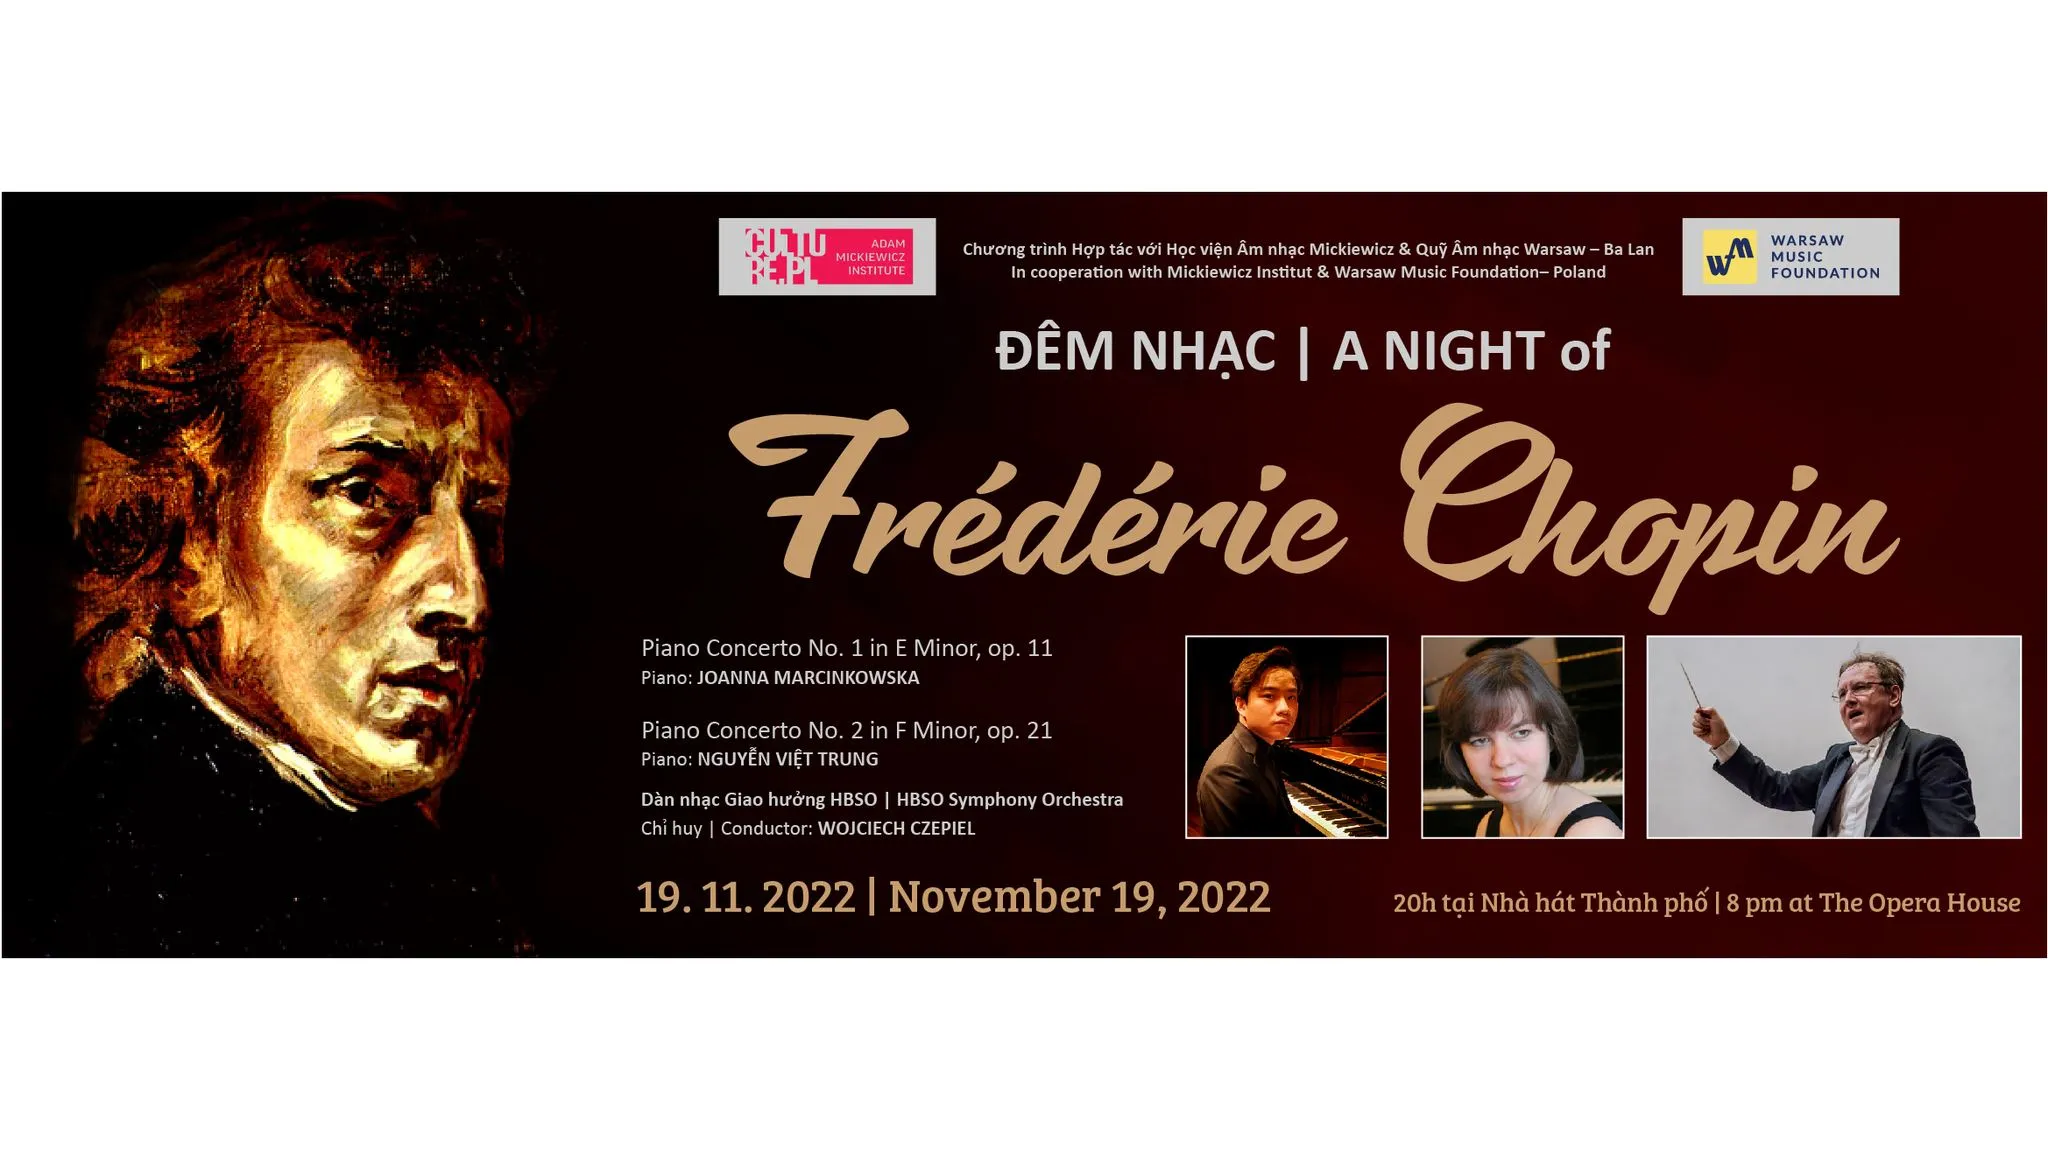 Các đêm nhạc bắt đầu từ 8 giờ tối ngày 19-20/11 tại Nhà hát TPHCM. Giá vé từ 750.000 đến 400.000 đồng (ưu đãi đồng giá cho sinh viên là 80.000 đồng).